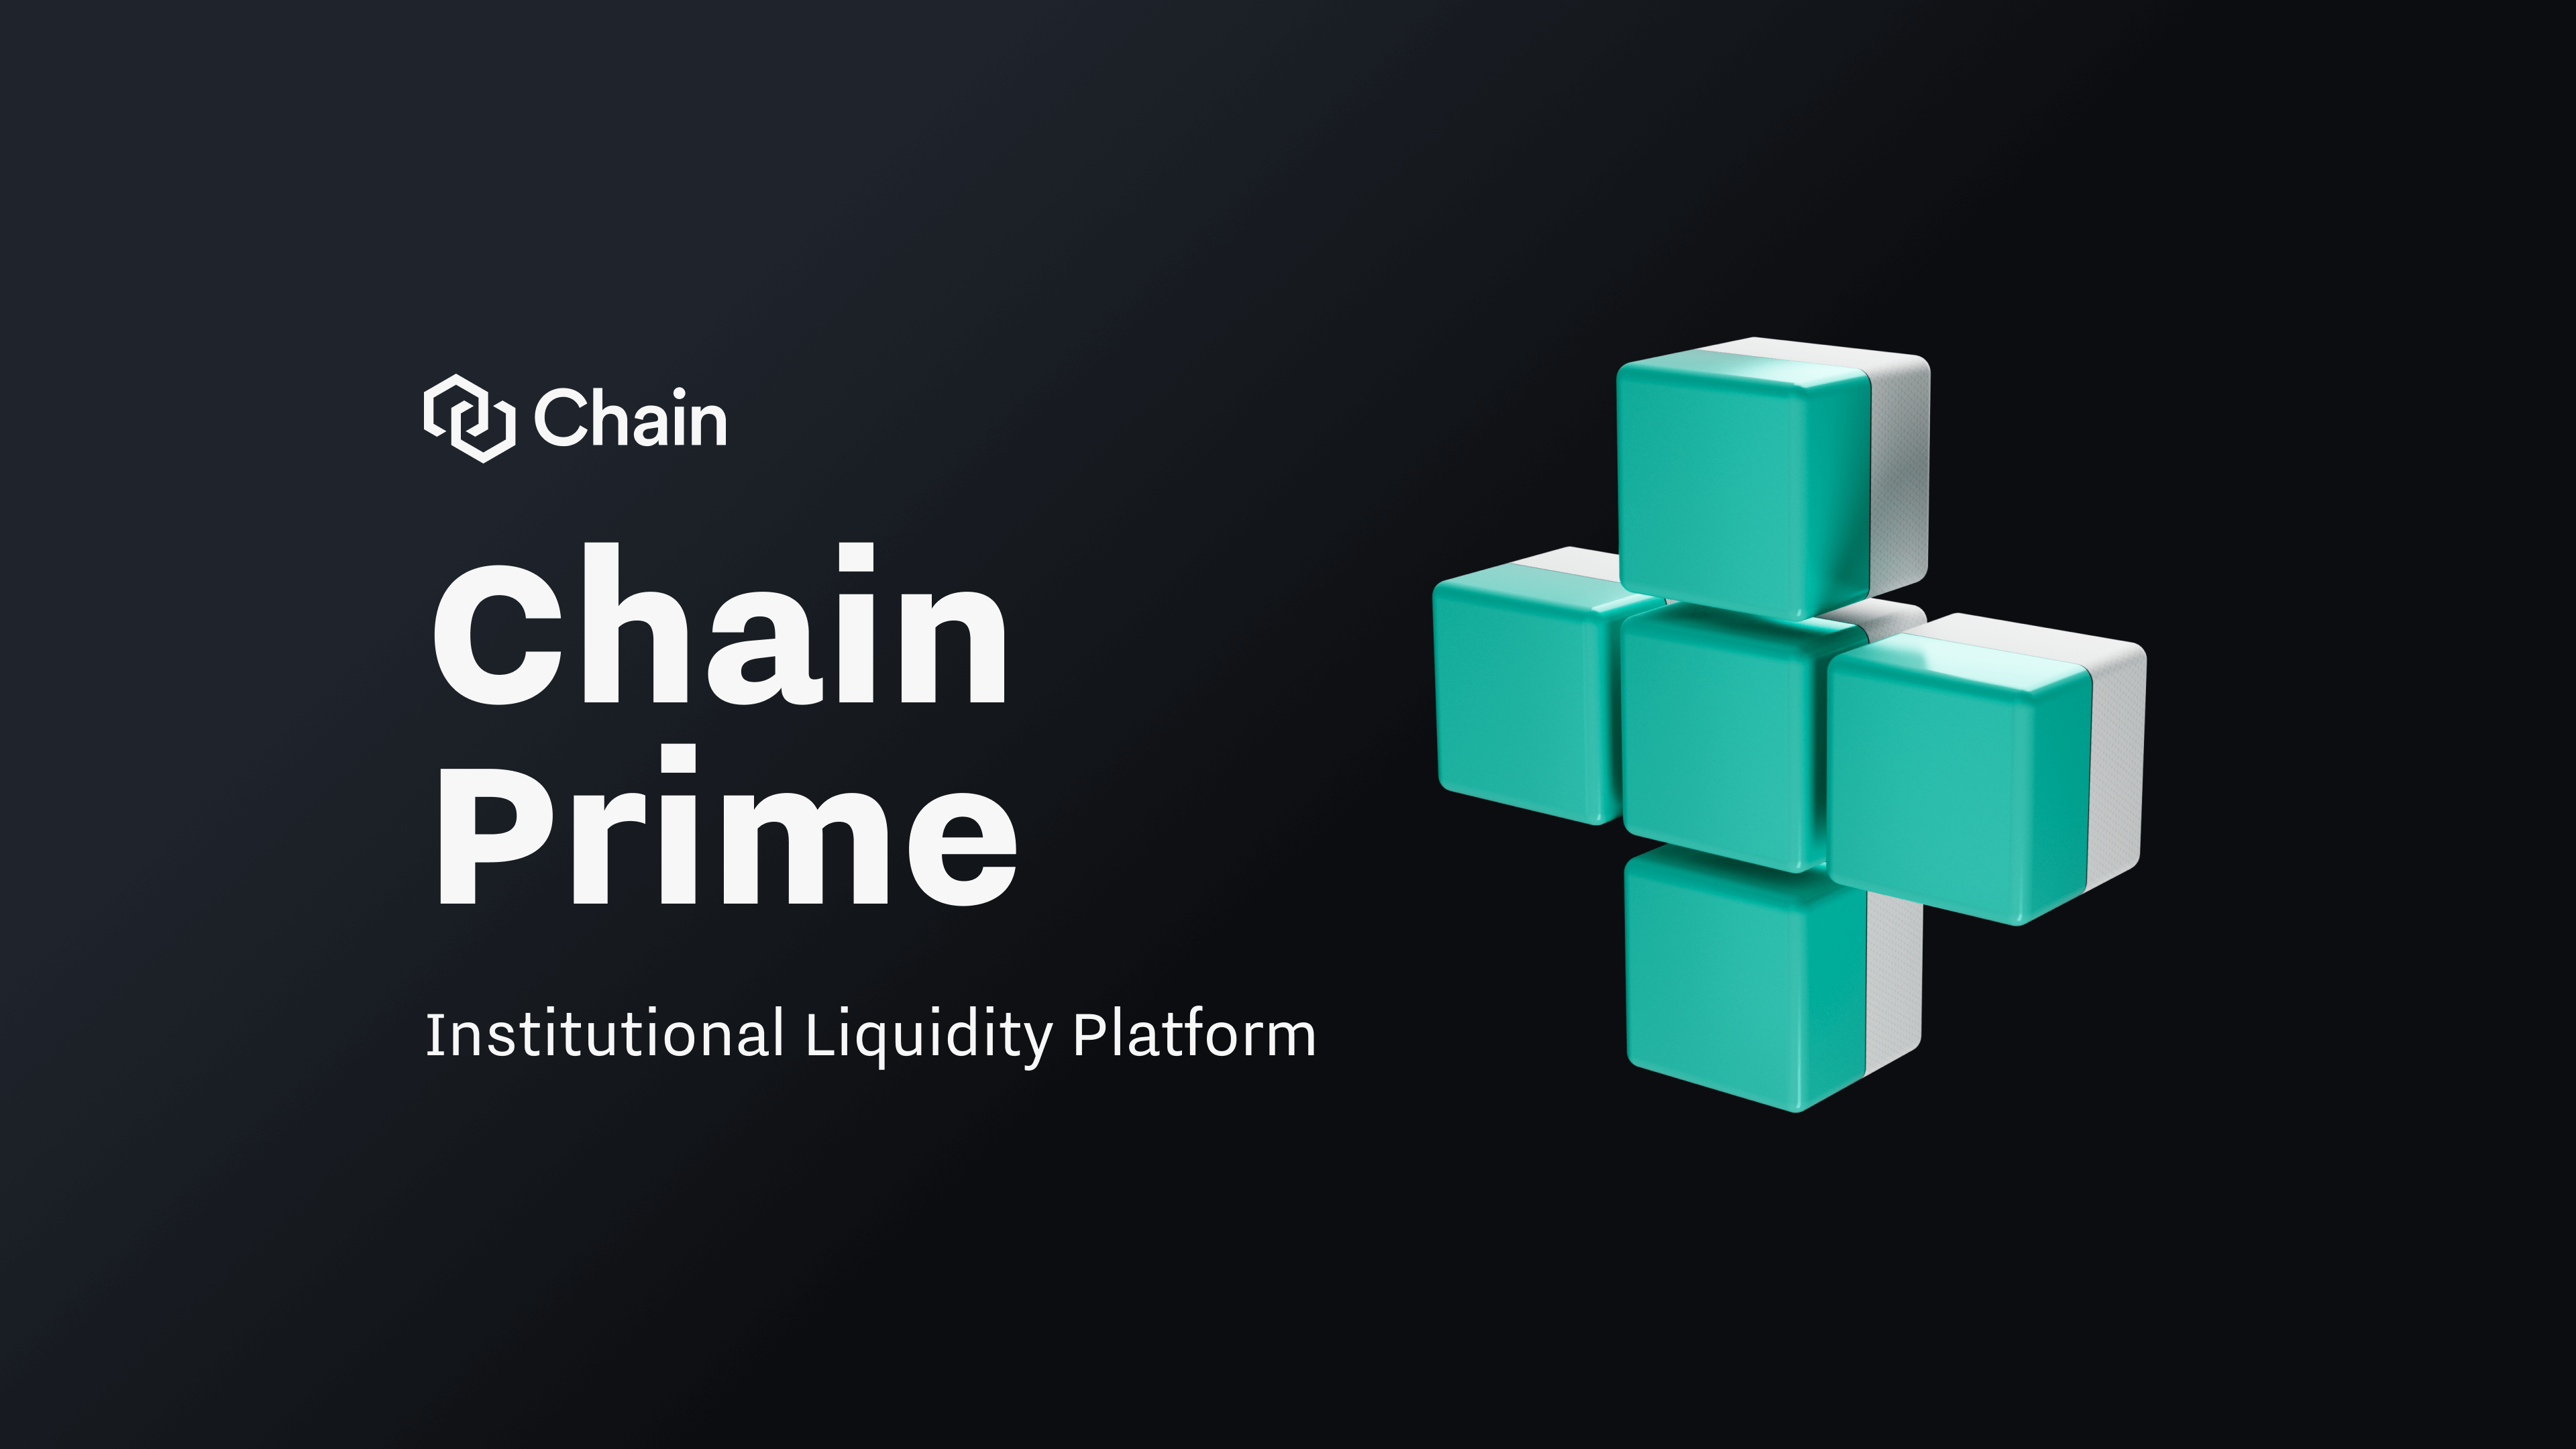 Chain Prime